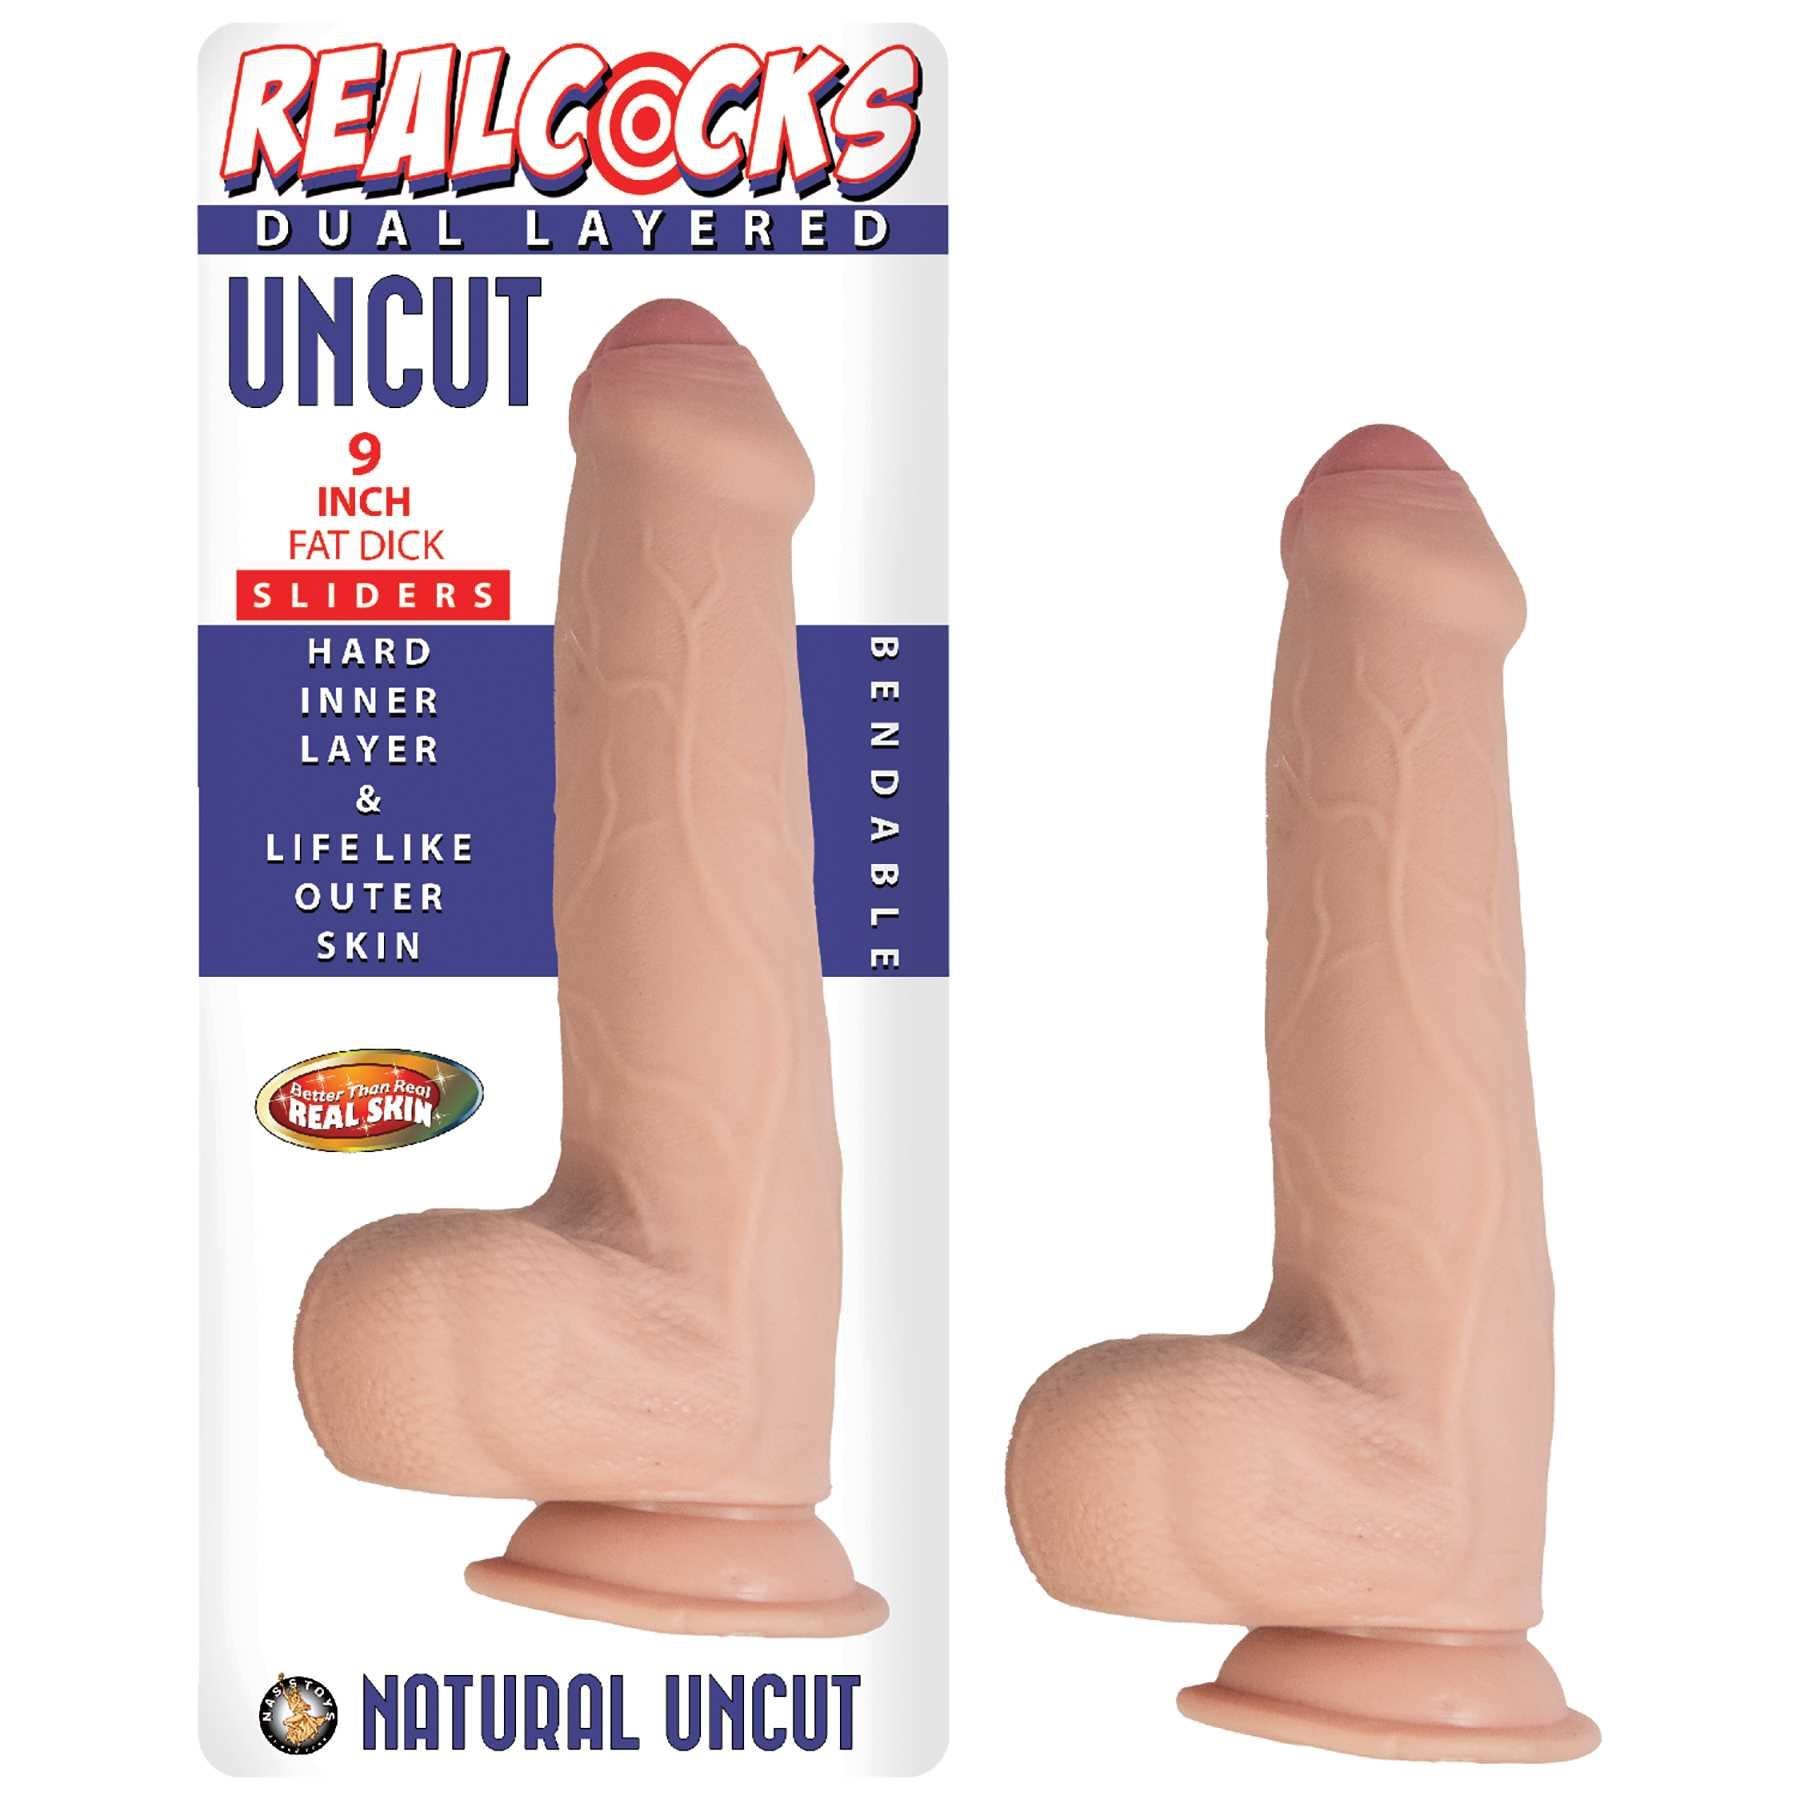 Realcocks 9 Inch Fat Dick Dual Layered Uncut Sliders Dildo